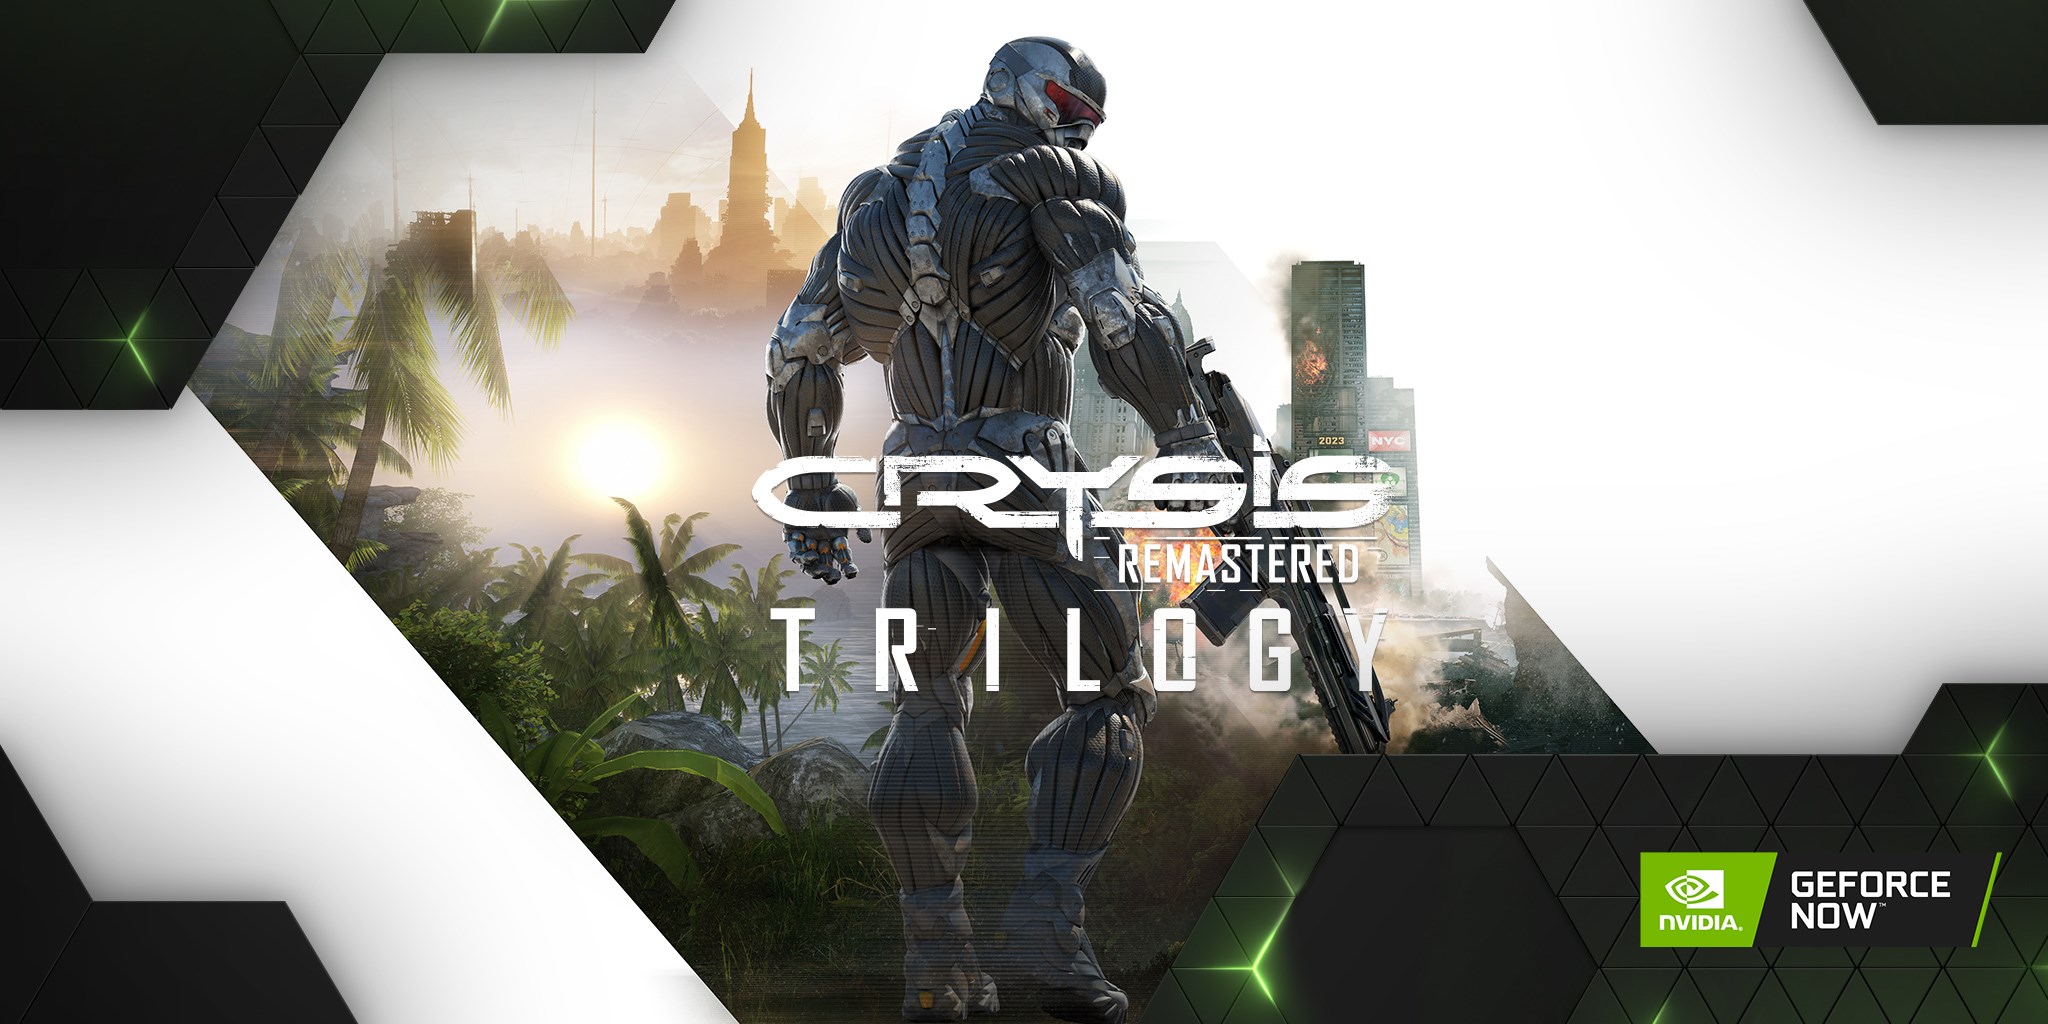 Crysis Remastered Trilogy dahil 6 oyun GeForce Now'a eklendi